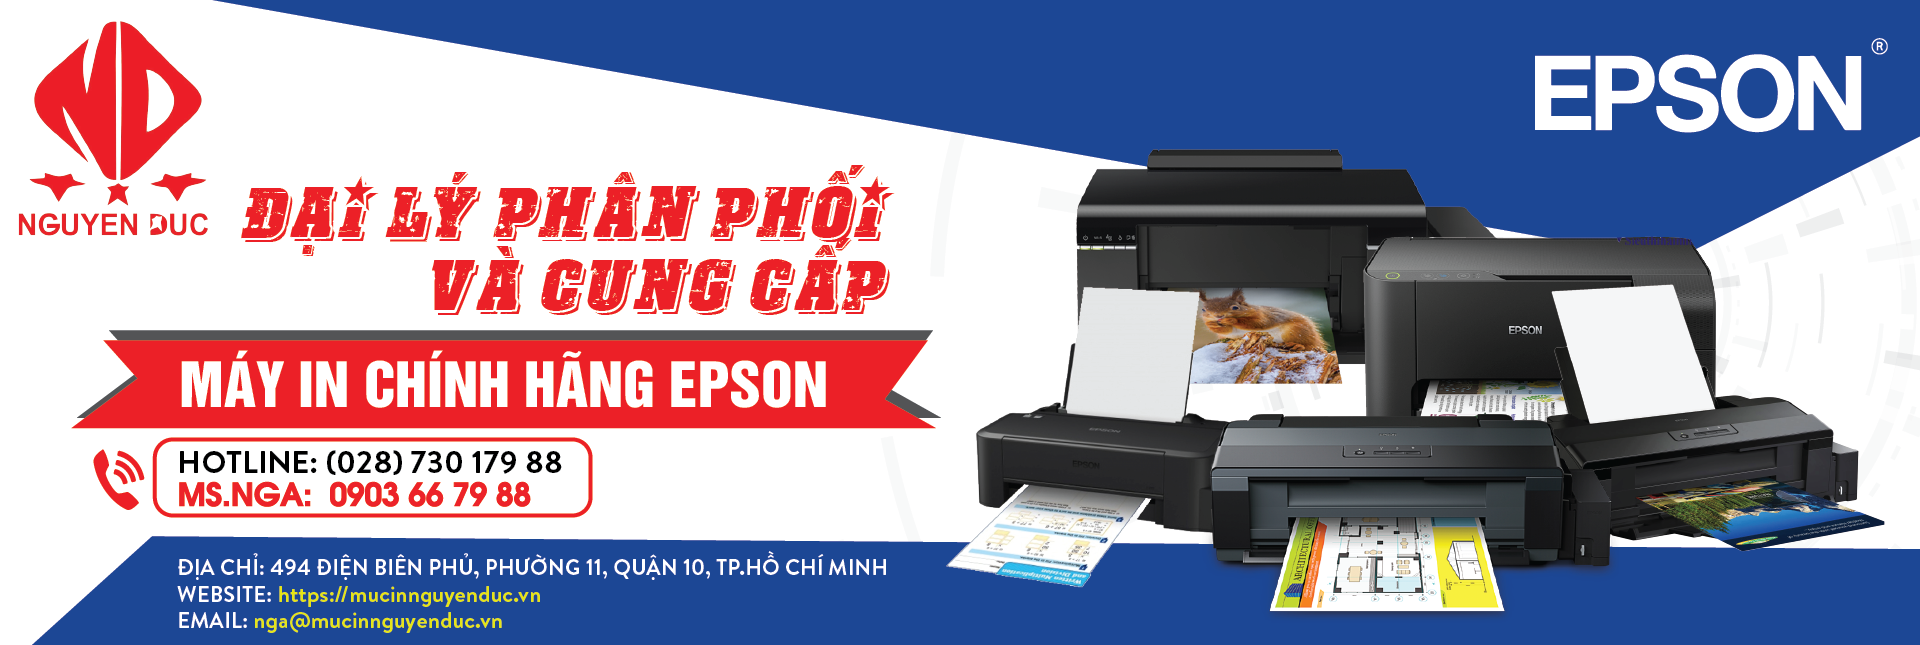 Đại lí phân phối máy in epson LQ-310 - chính hãng, giao hàng tại tỉnh Ninh Bình